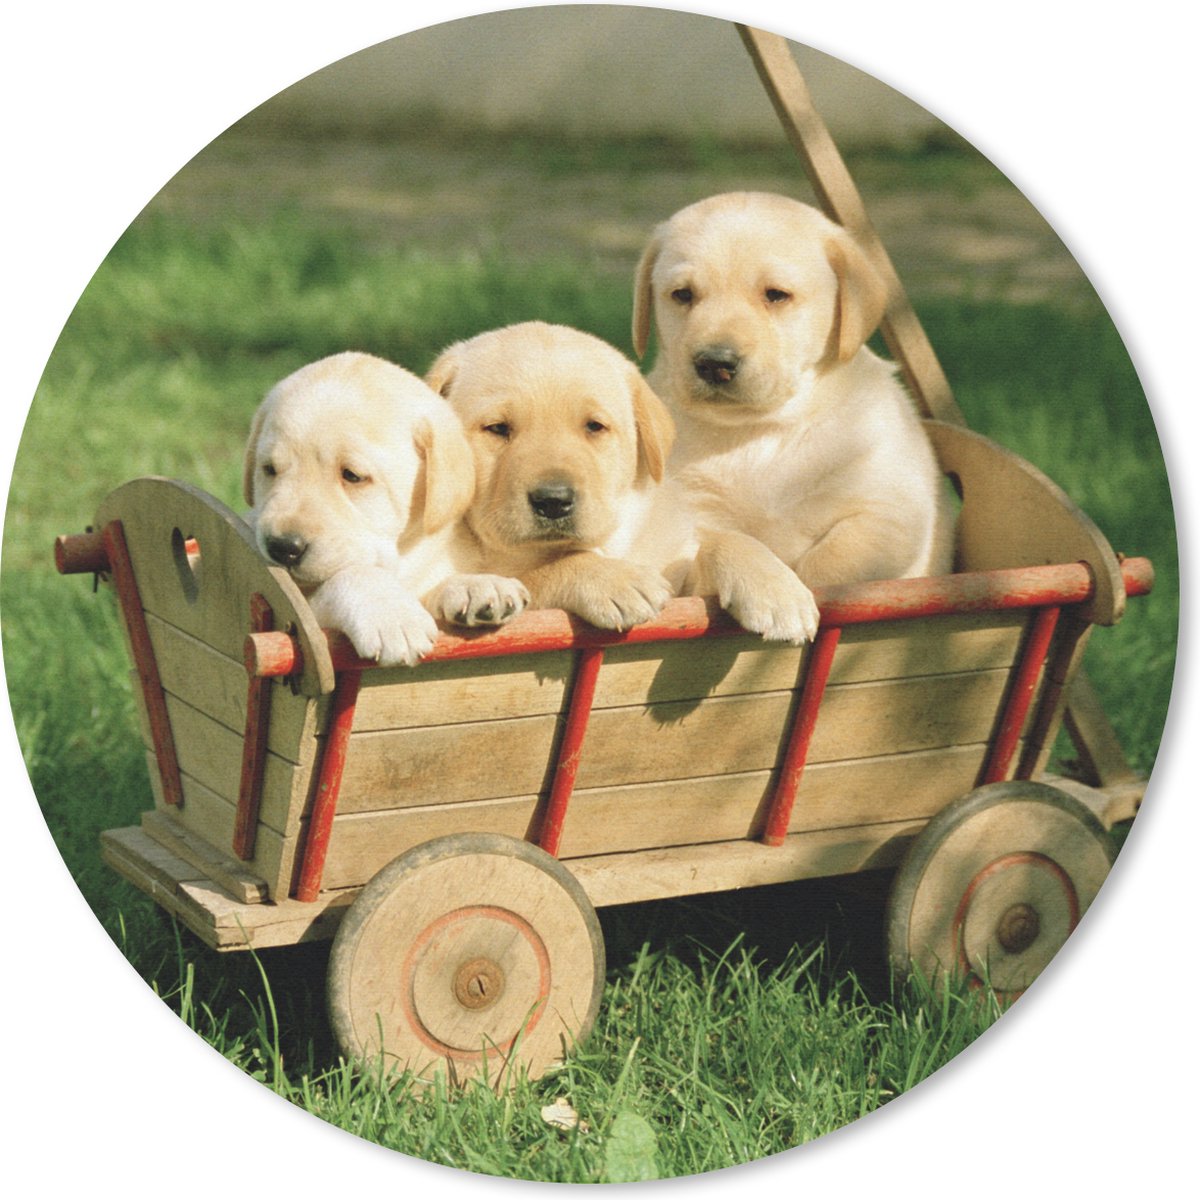 Muismat - Mousepad - Rond - Drie schattige Golden Retriever puppy's in een kar - 20x20 cm - Ronde muismat